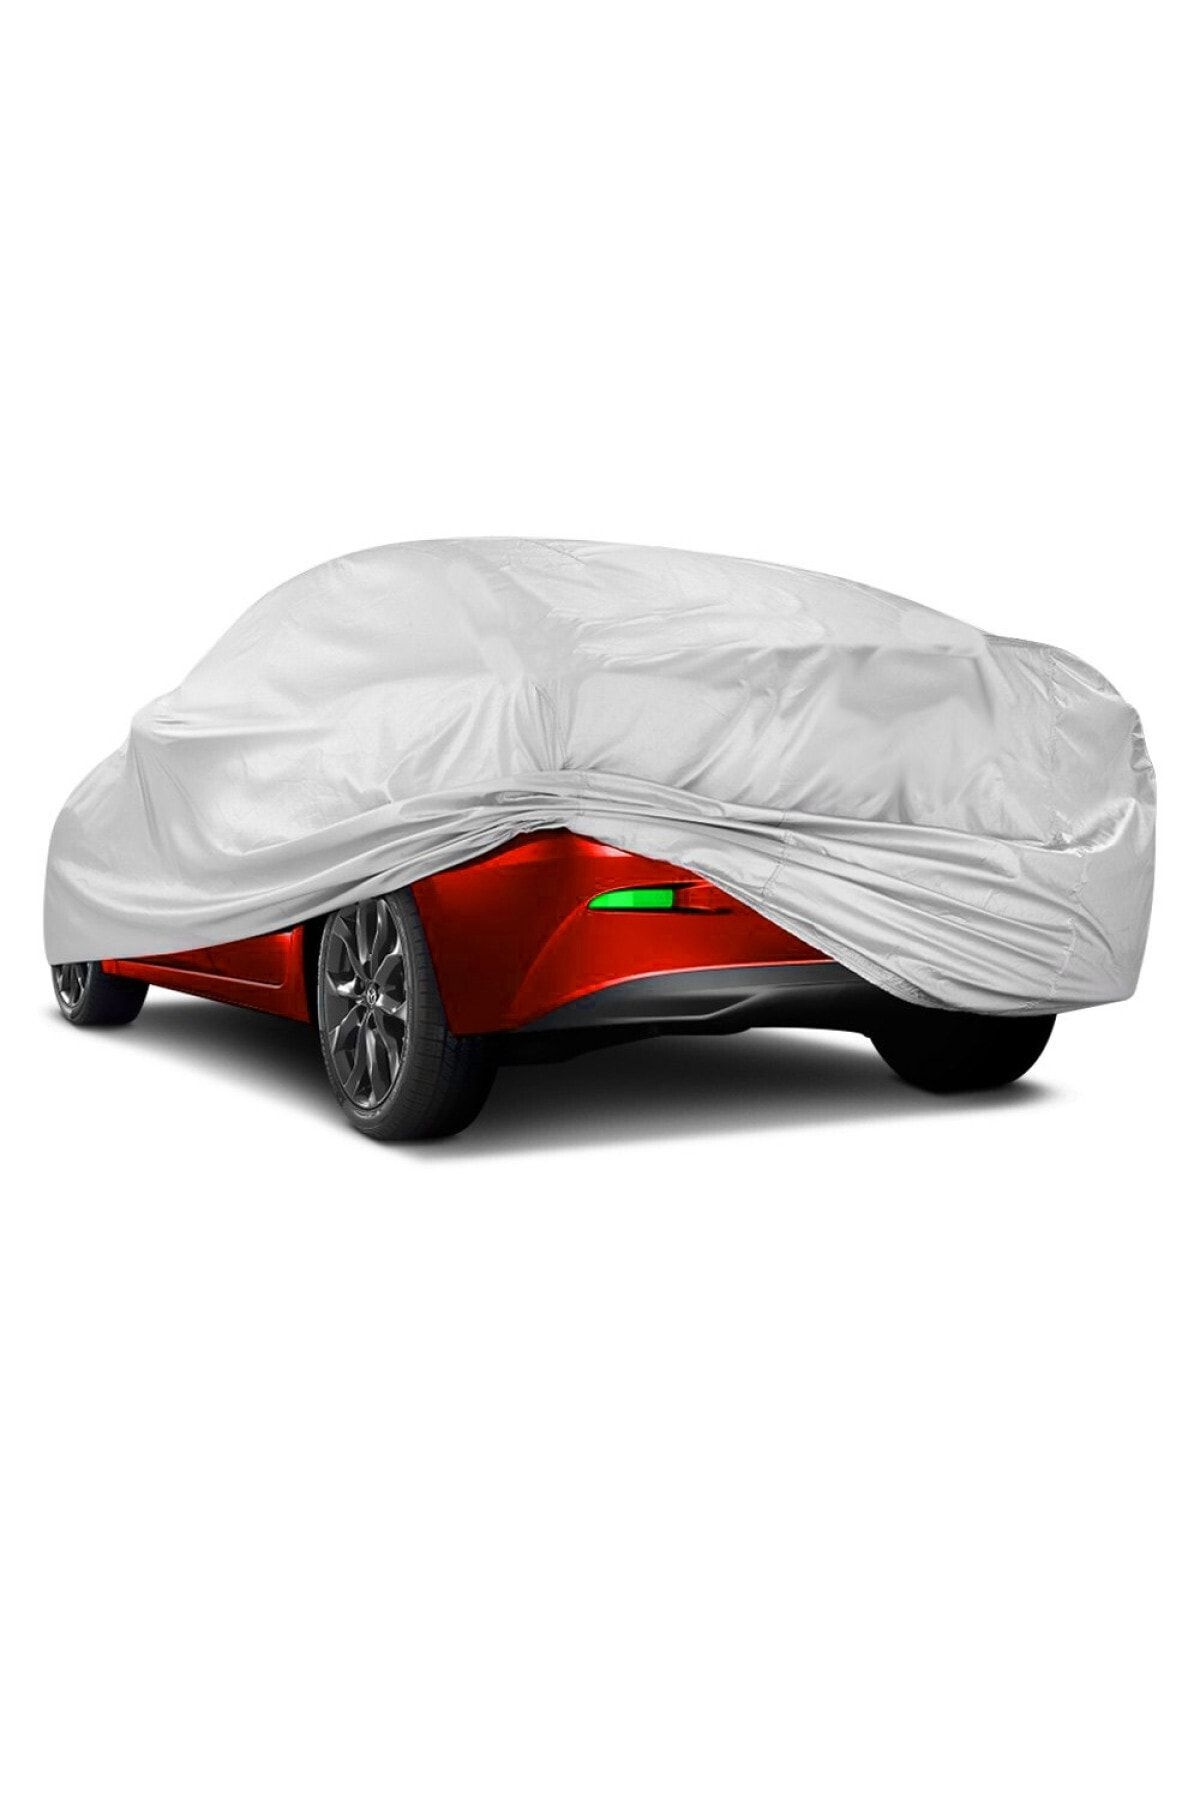 Peugeot Partner Tepee Araba Brandası Miflonlu Branda Oto Çadır Örtü